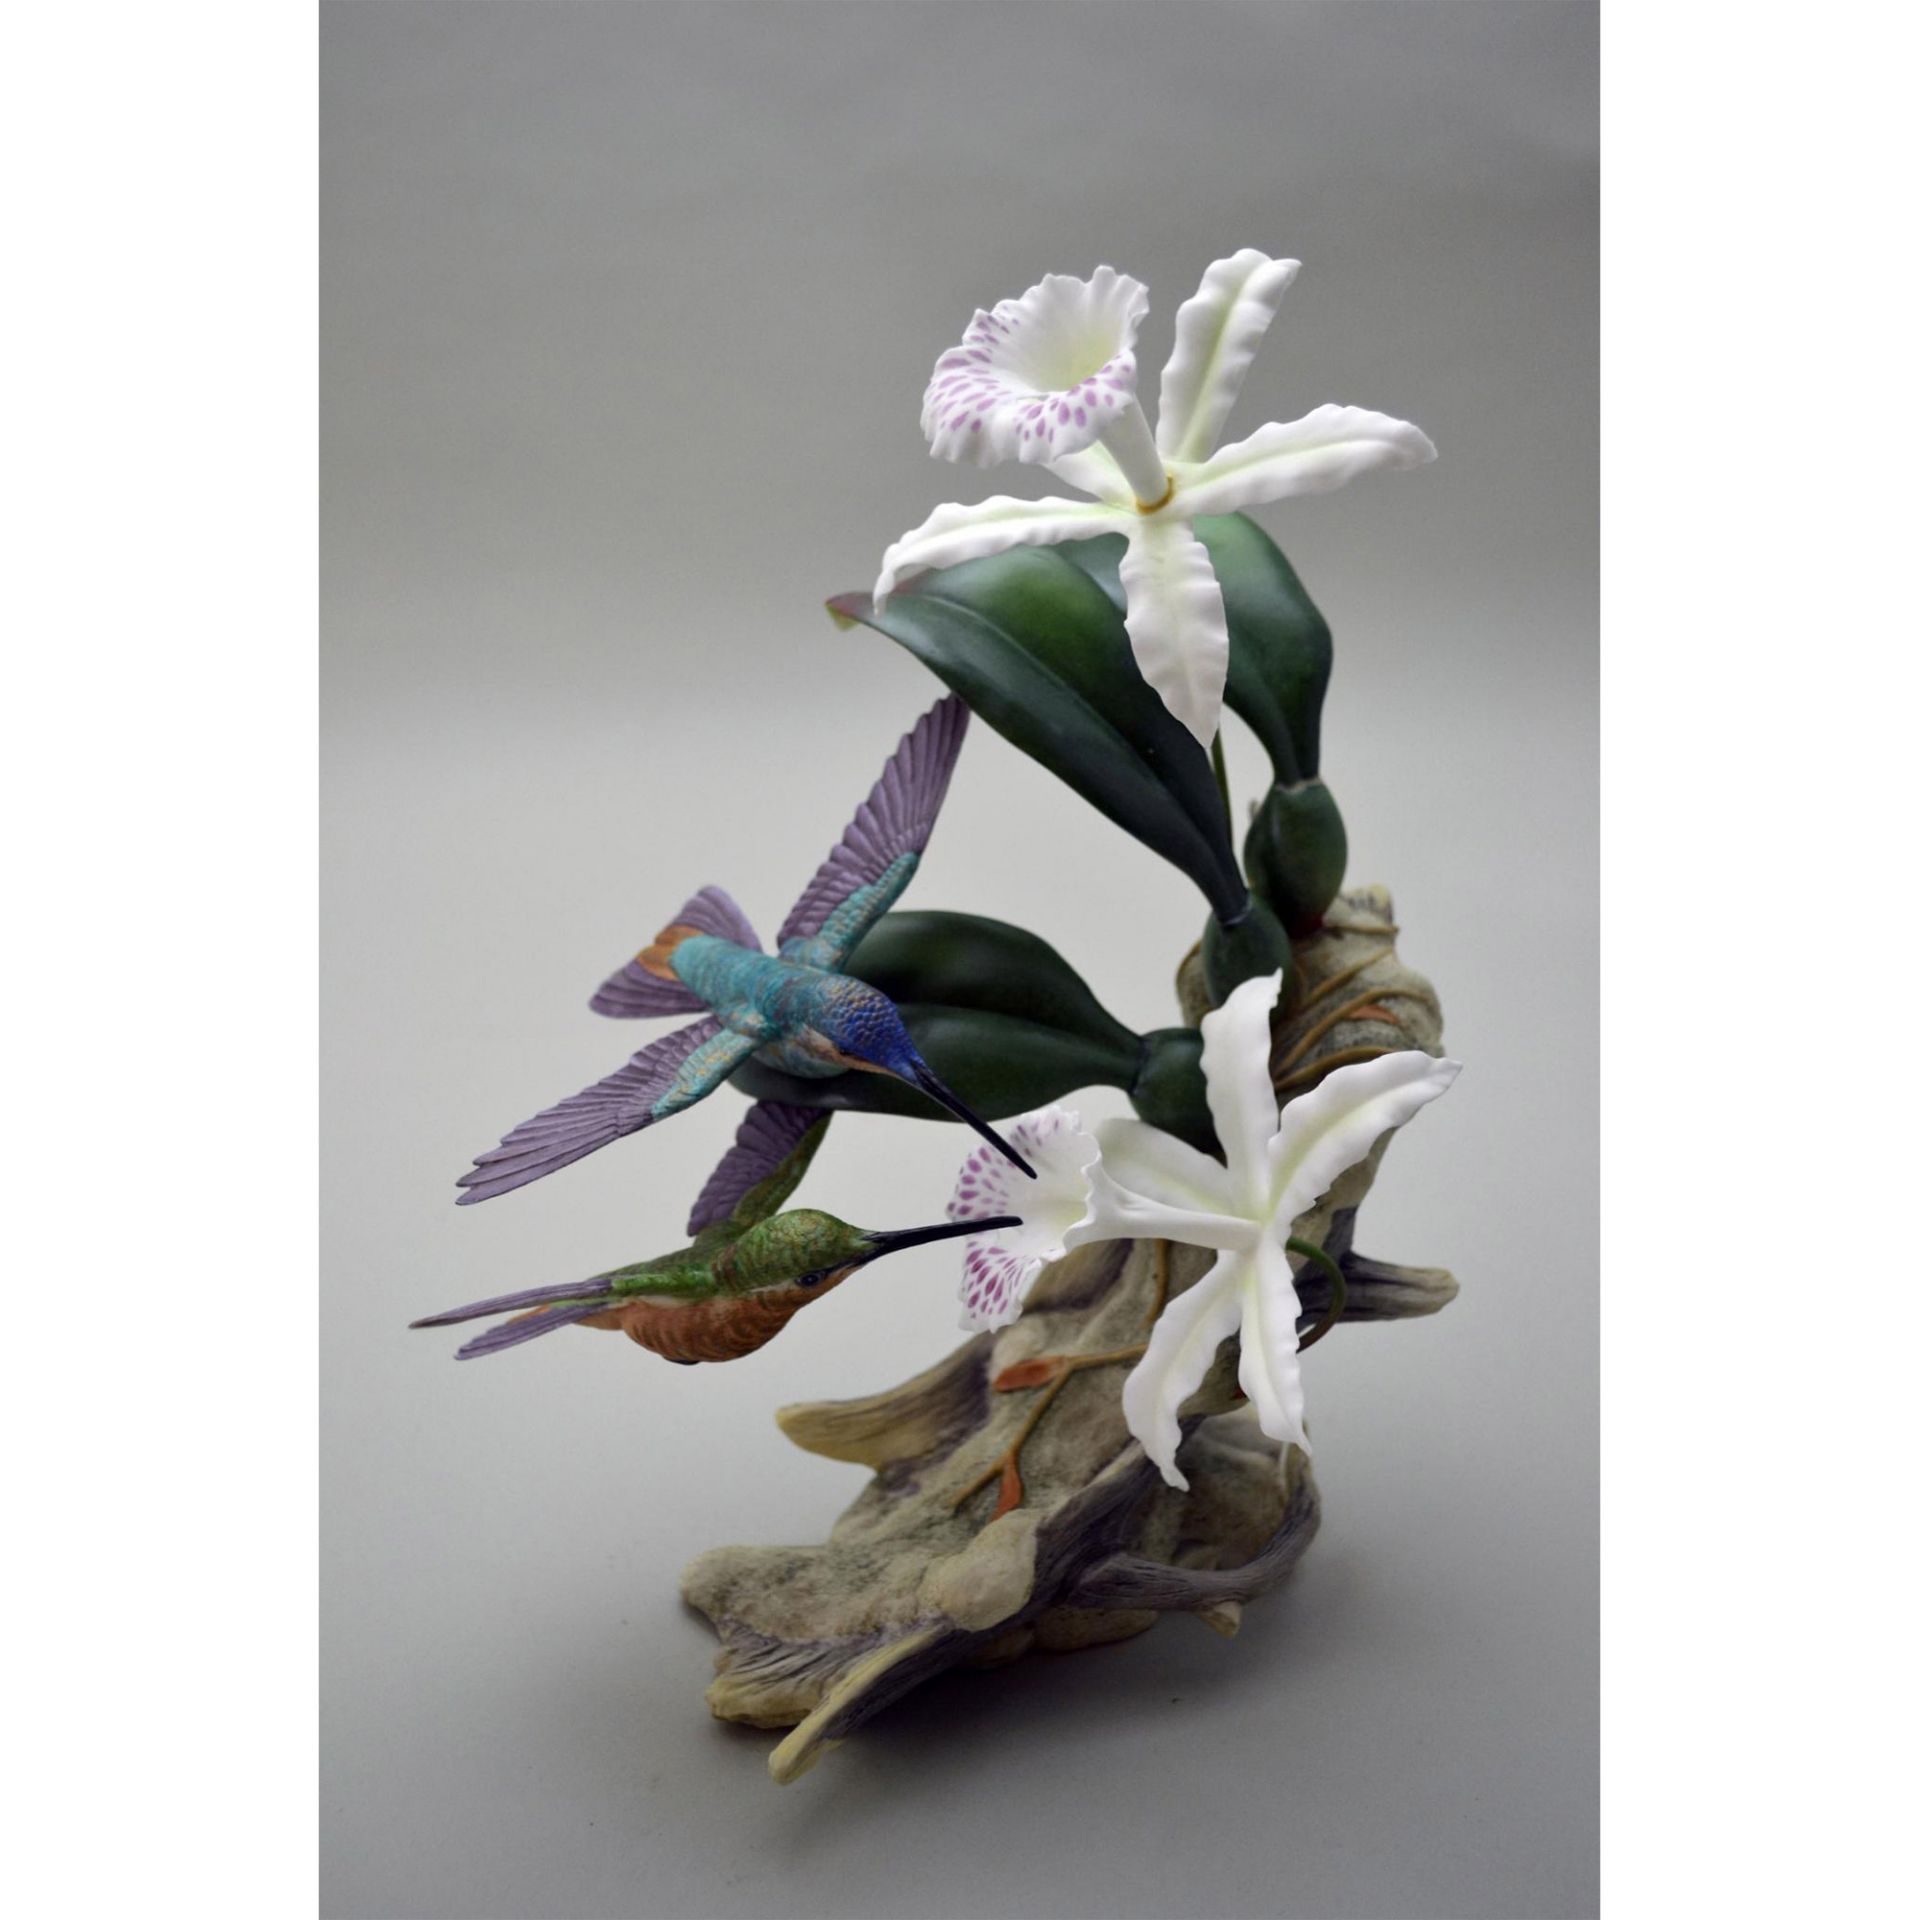 Boehm Porcelain Leadbeaters Brilliant Hummingbirds Sculpture